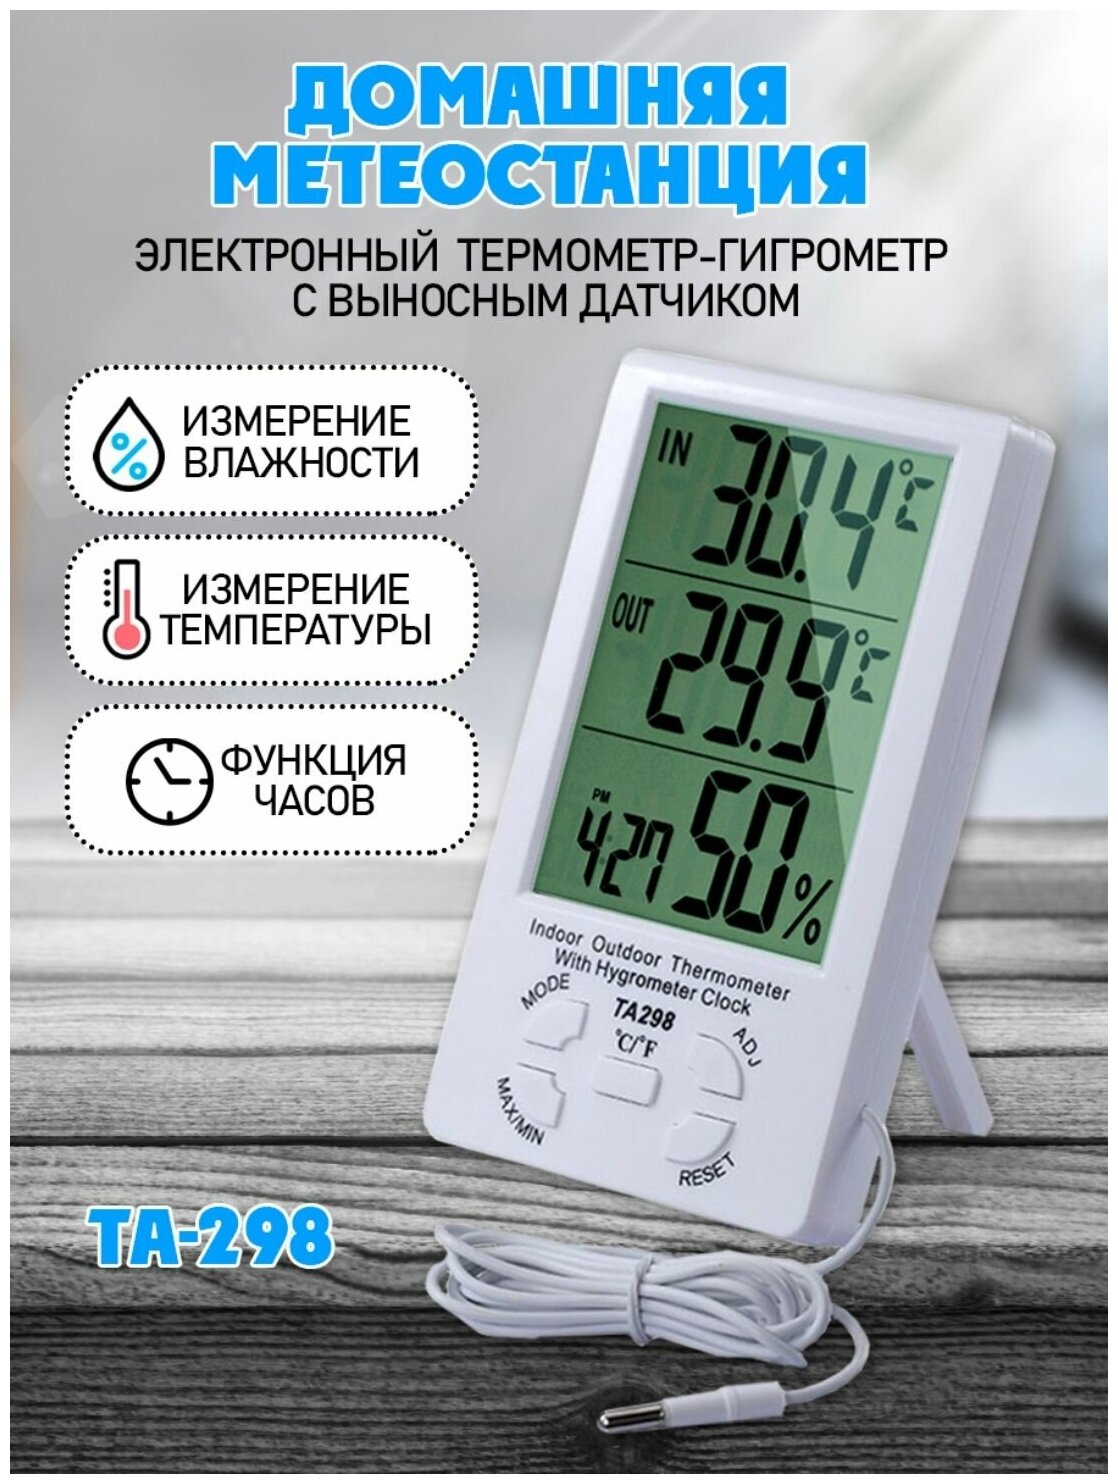 Домашняя метеостанция: термометр-гигрометр с датчиком температуры влажности и часами ТА-298